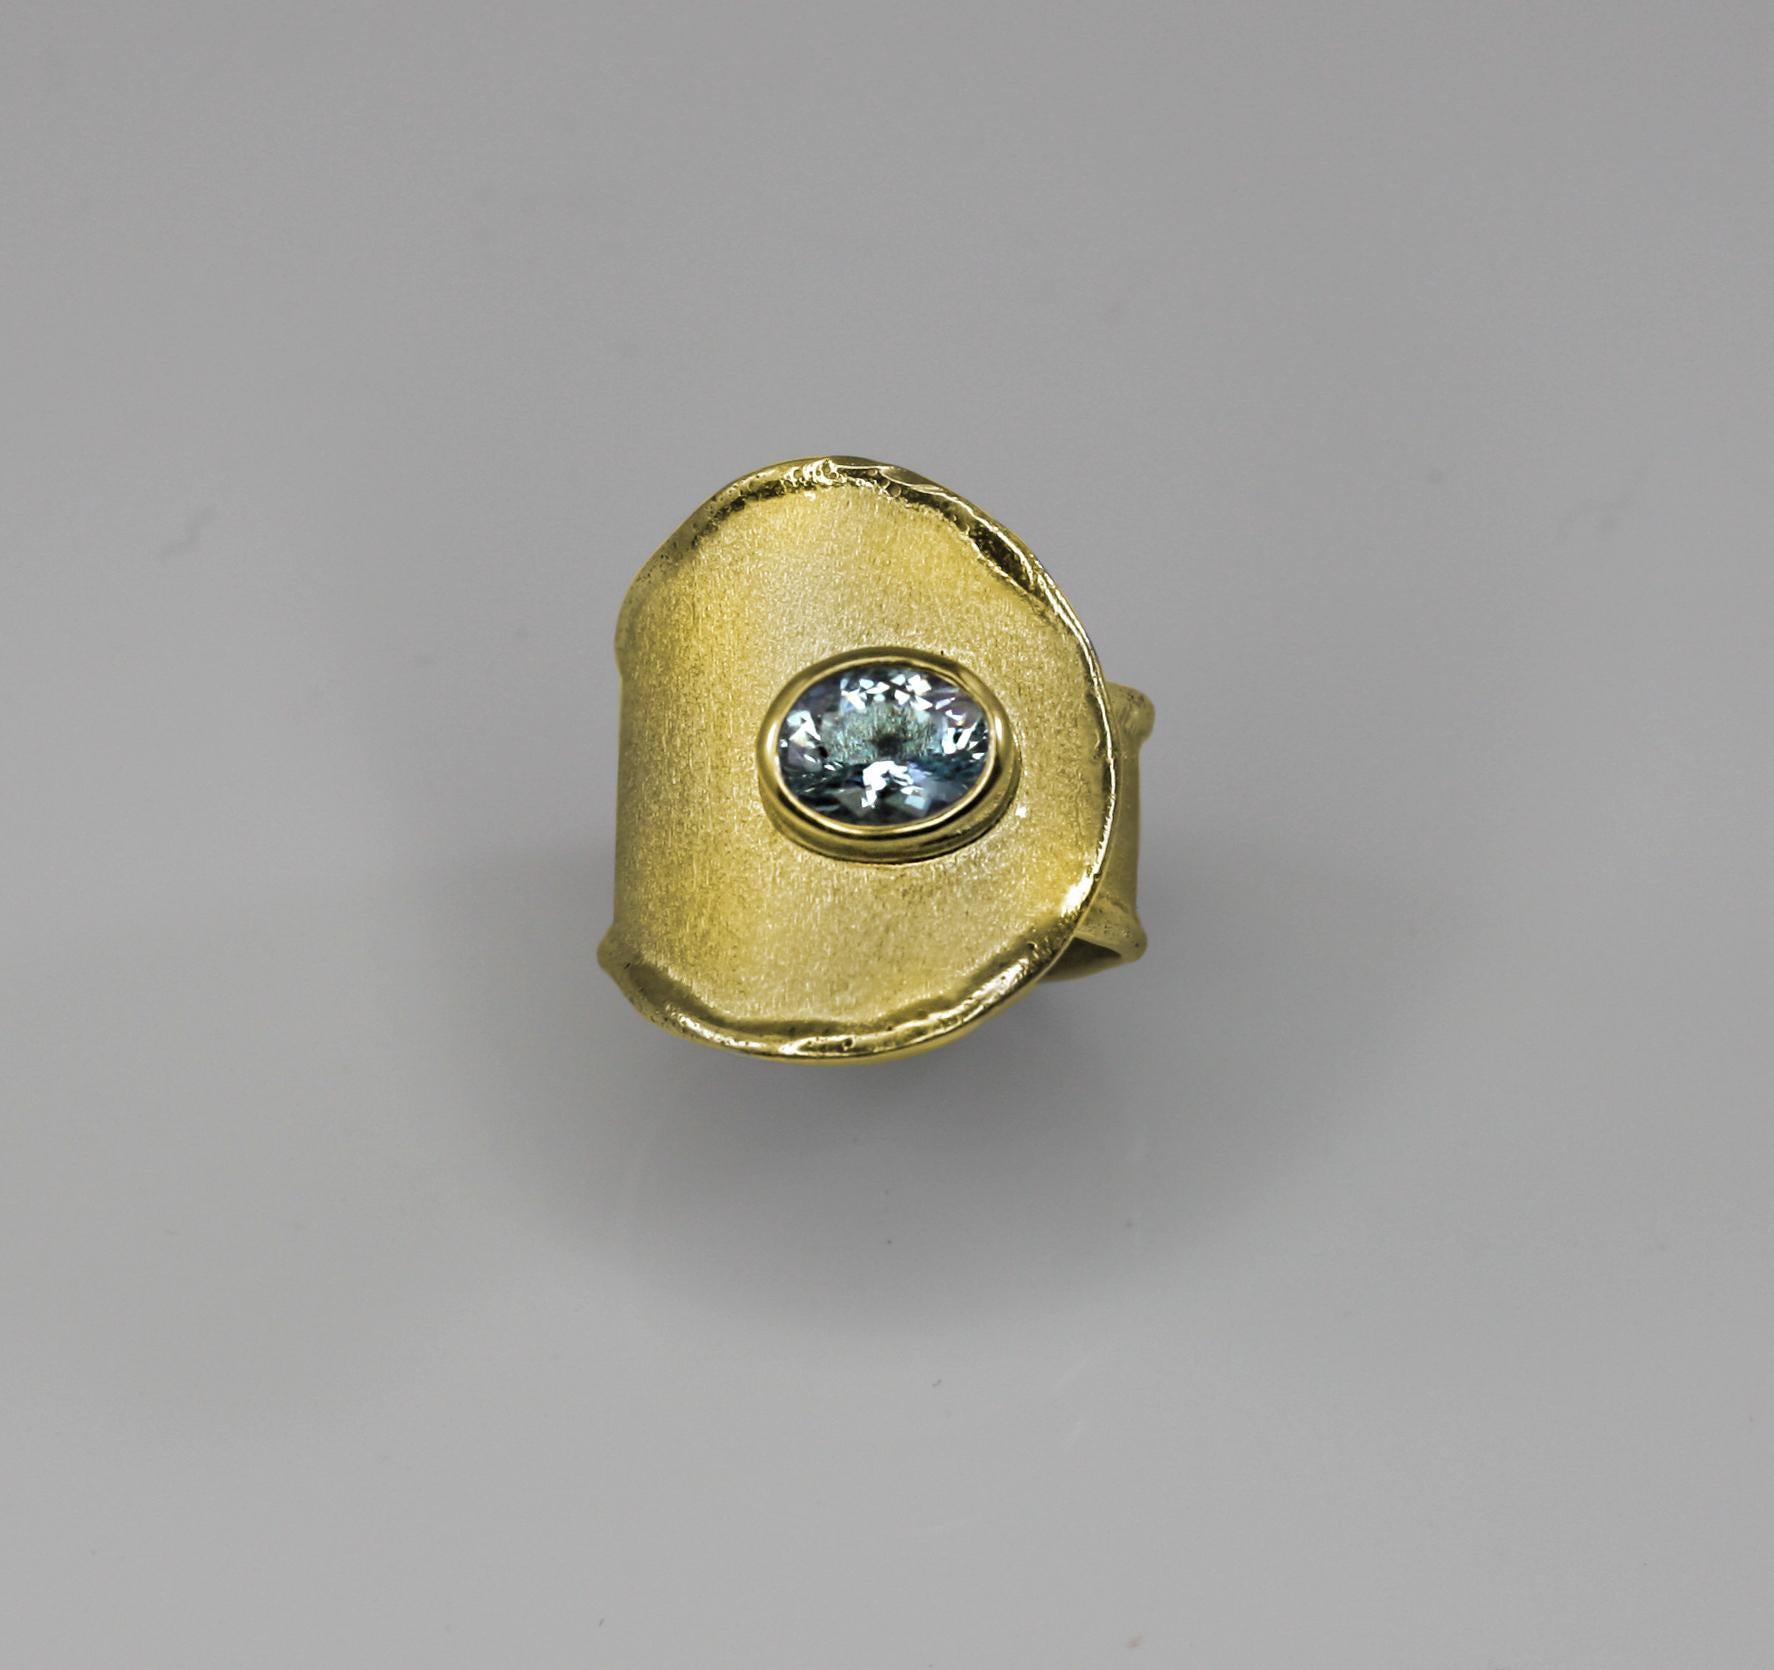 Yianni Creations präsentiert einen 100% handgefertigten Ring aus 18 Karat Gelbgold. Dieser wunderschöne Ring ist mit einem ovalen Aquamarin von 1,10 Karat besetzt und verfügt über eine einzigartige Verarbeitungstechnik - byzantinische Bürste und